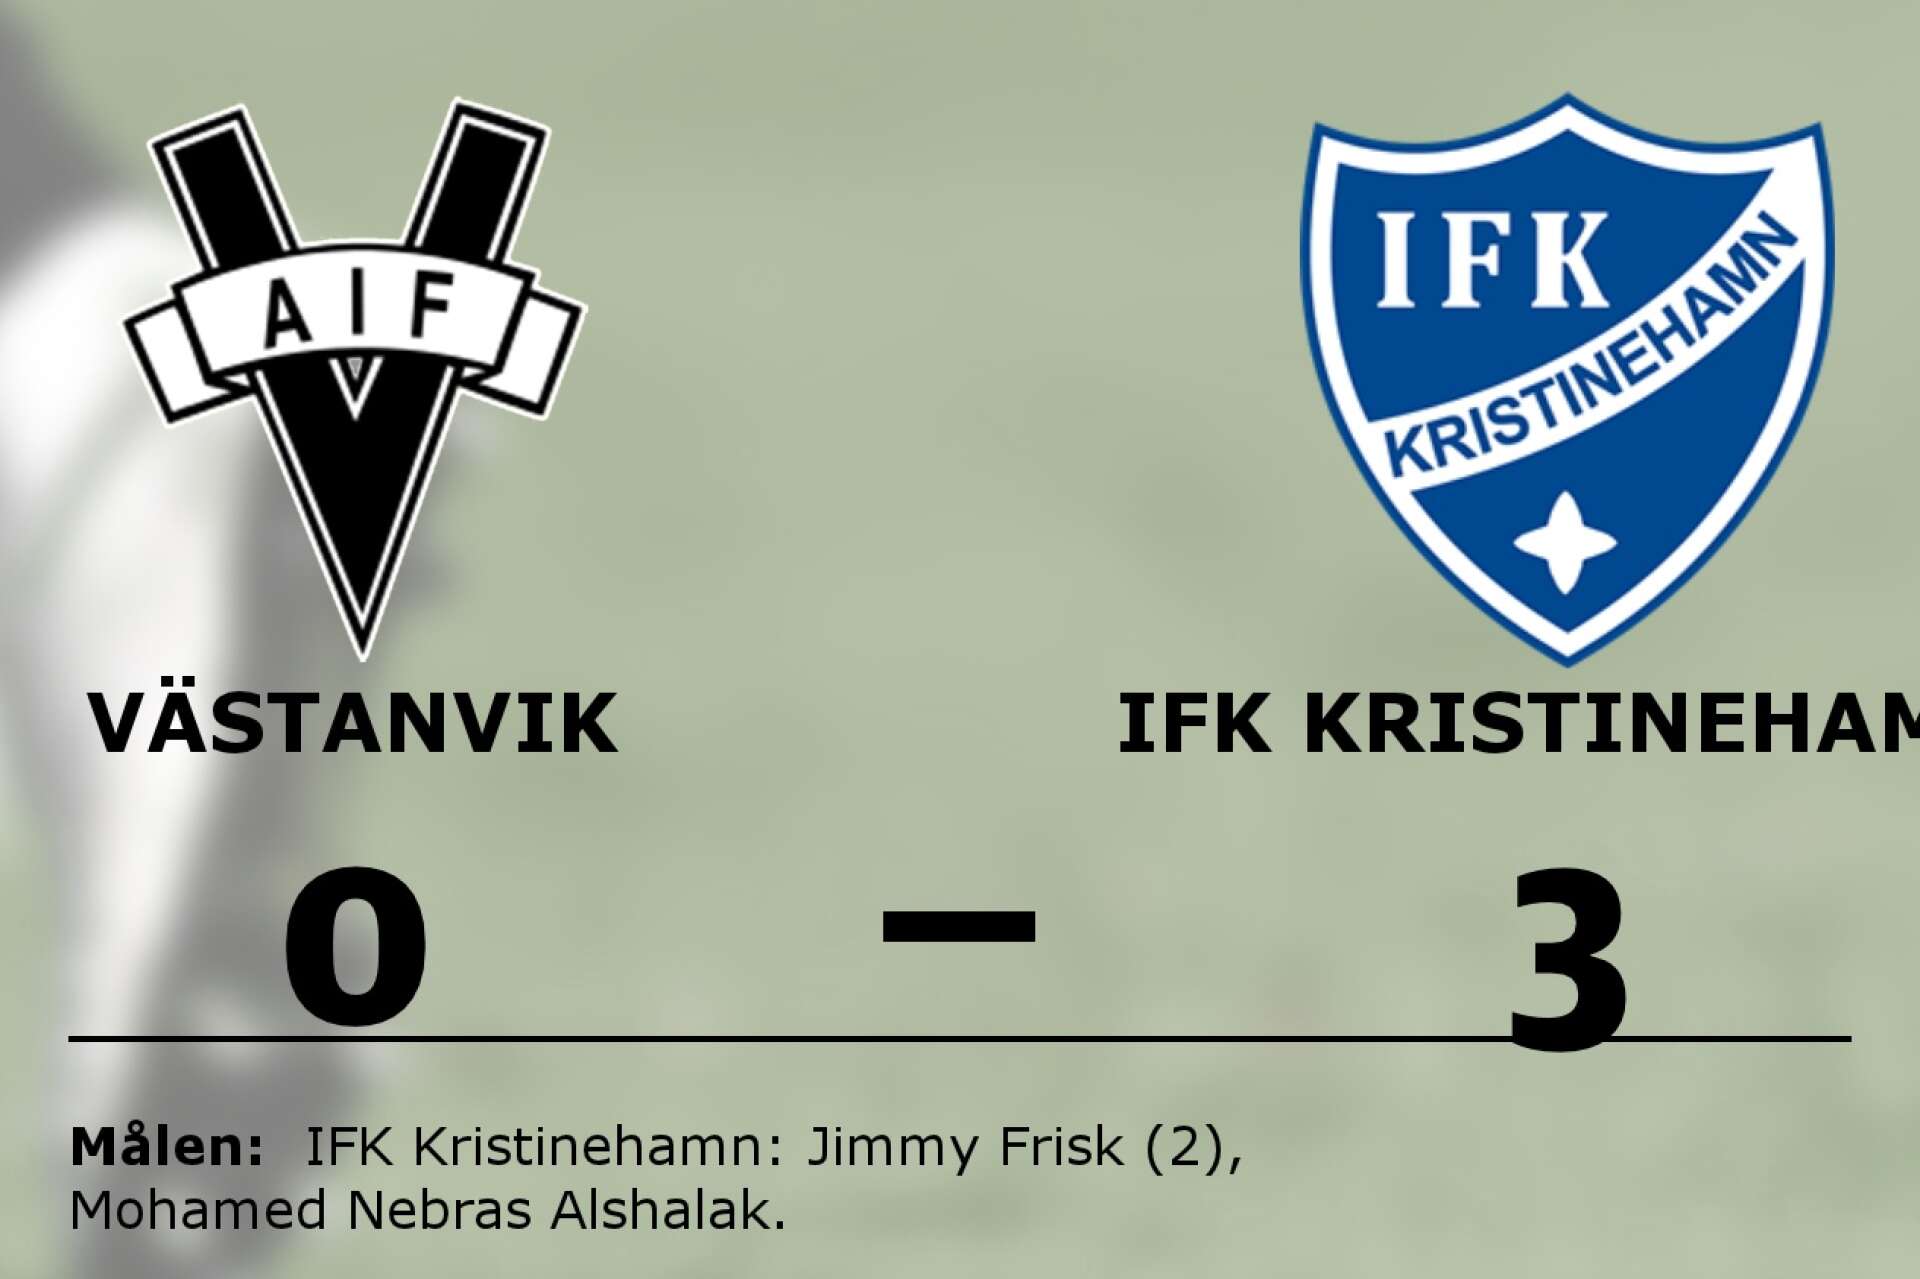 Västanvik förlorade mot IFK Kristinehamn